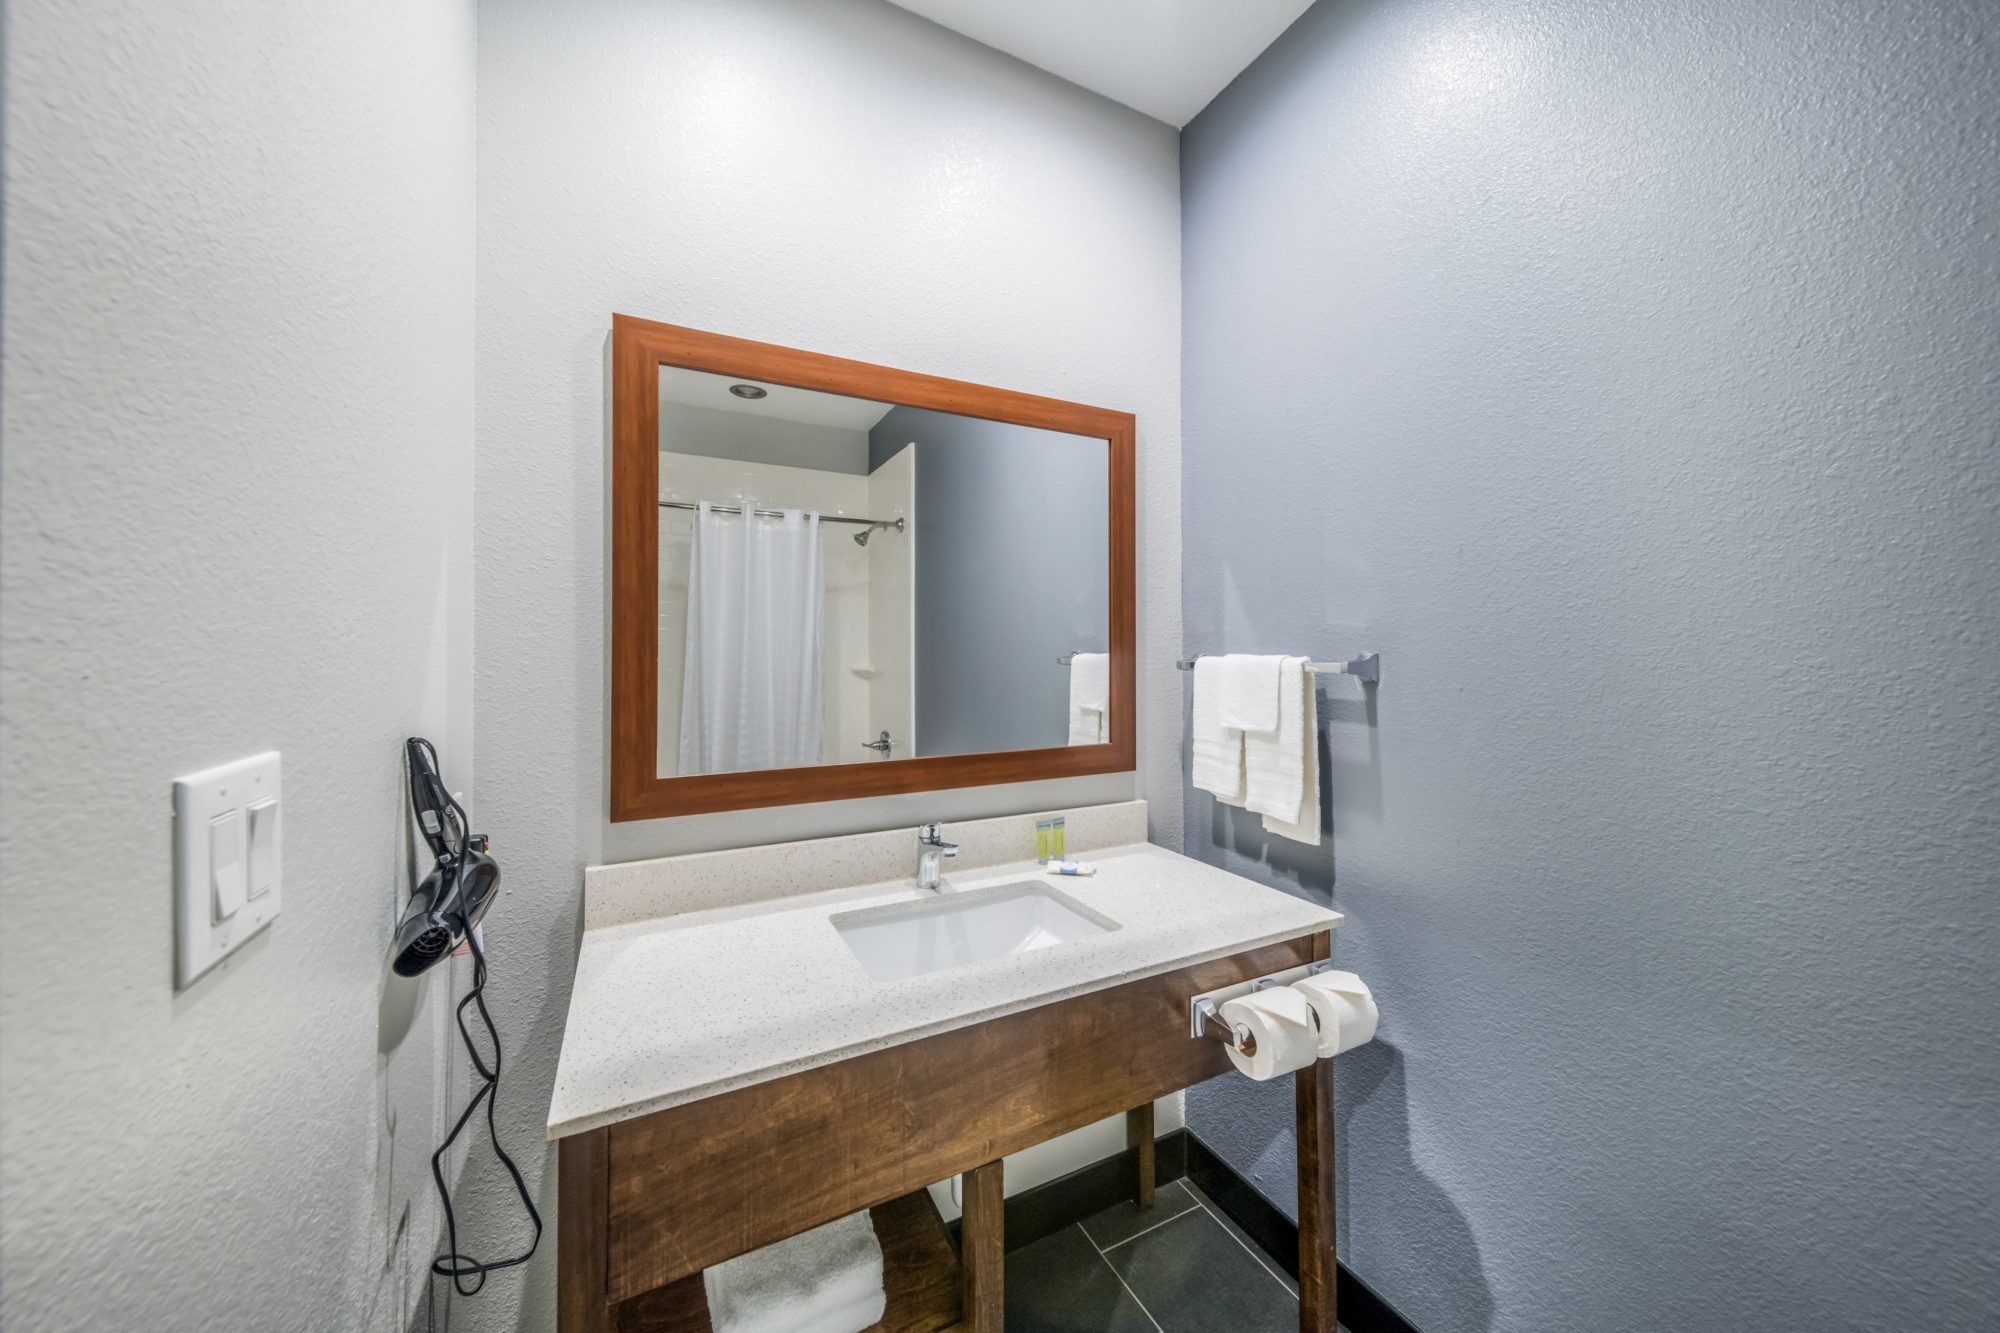 Vanity unit, bathroom amenities, towel rail with towels, mirror, hairdryer, tiled flooring